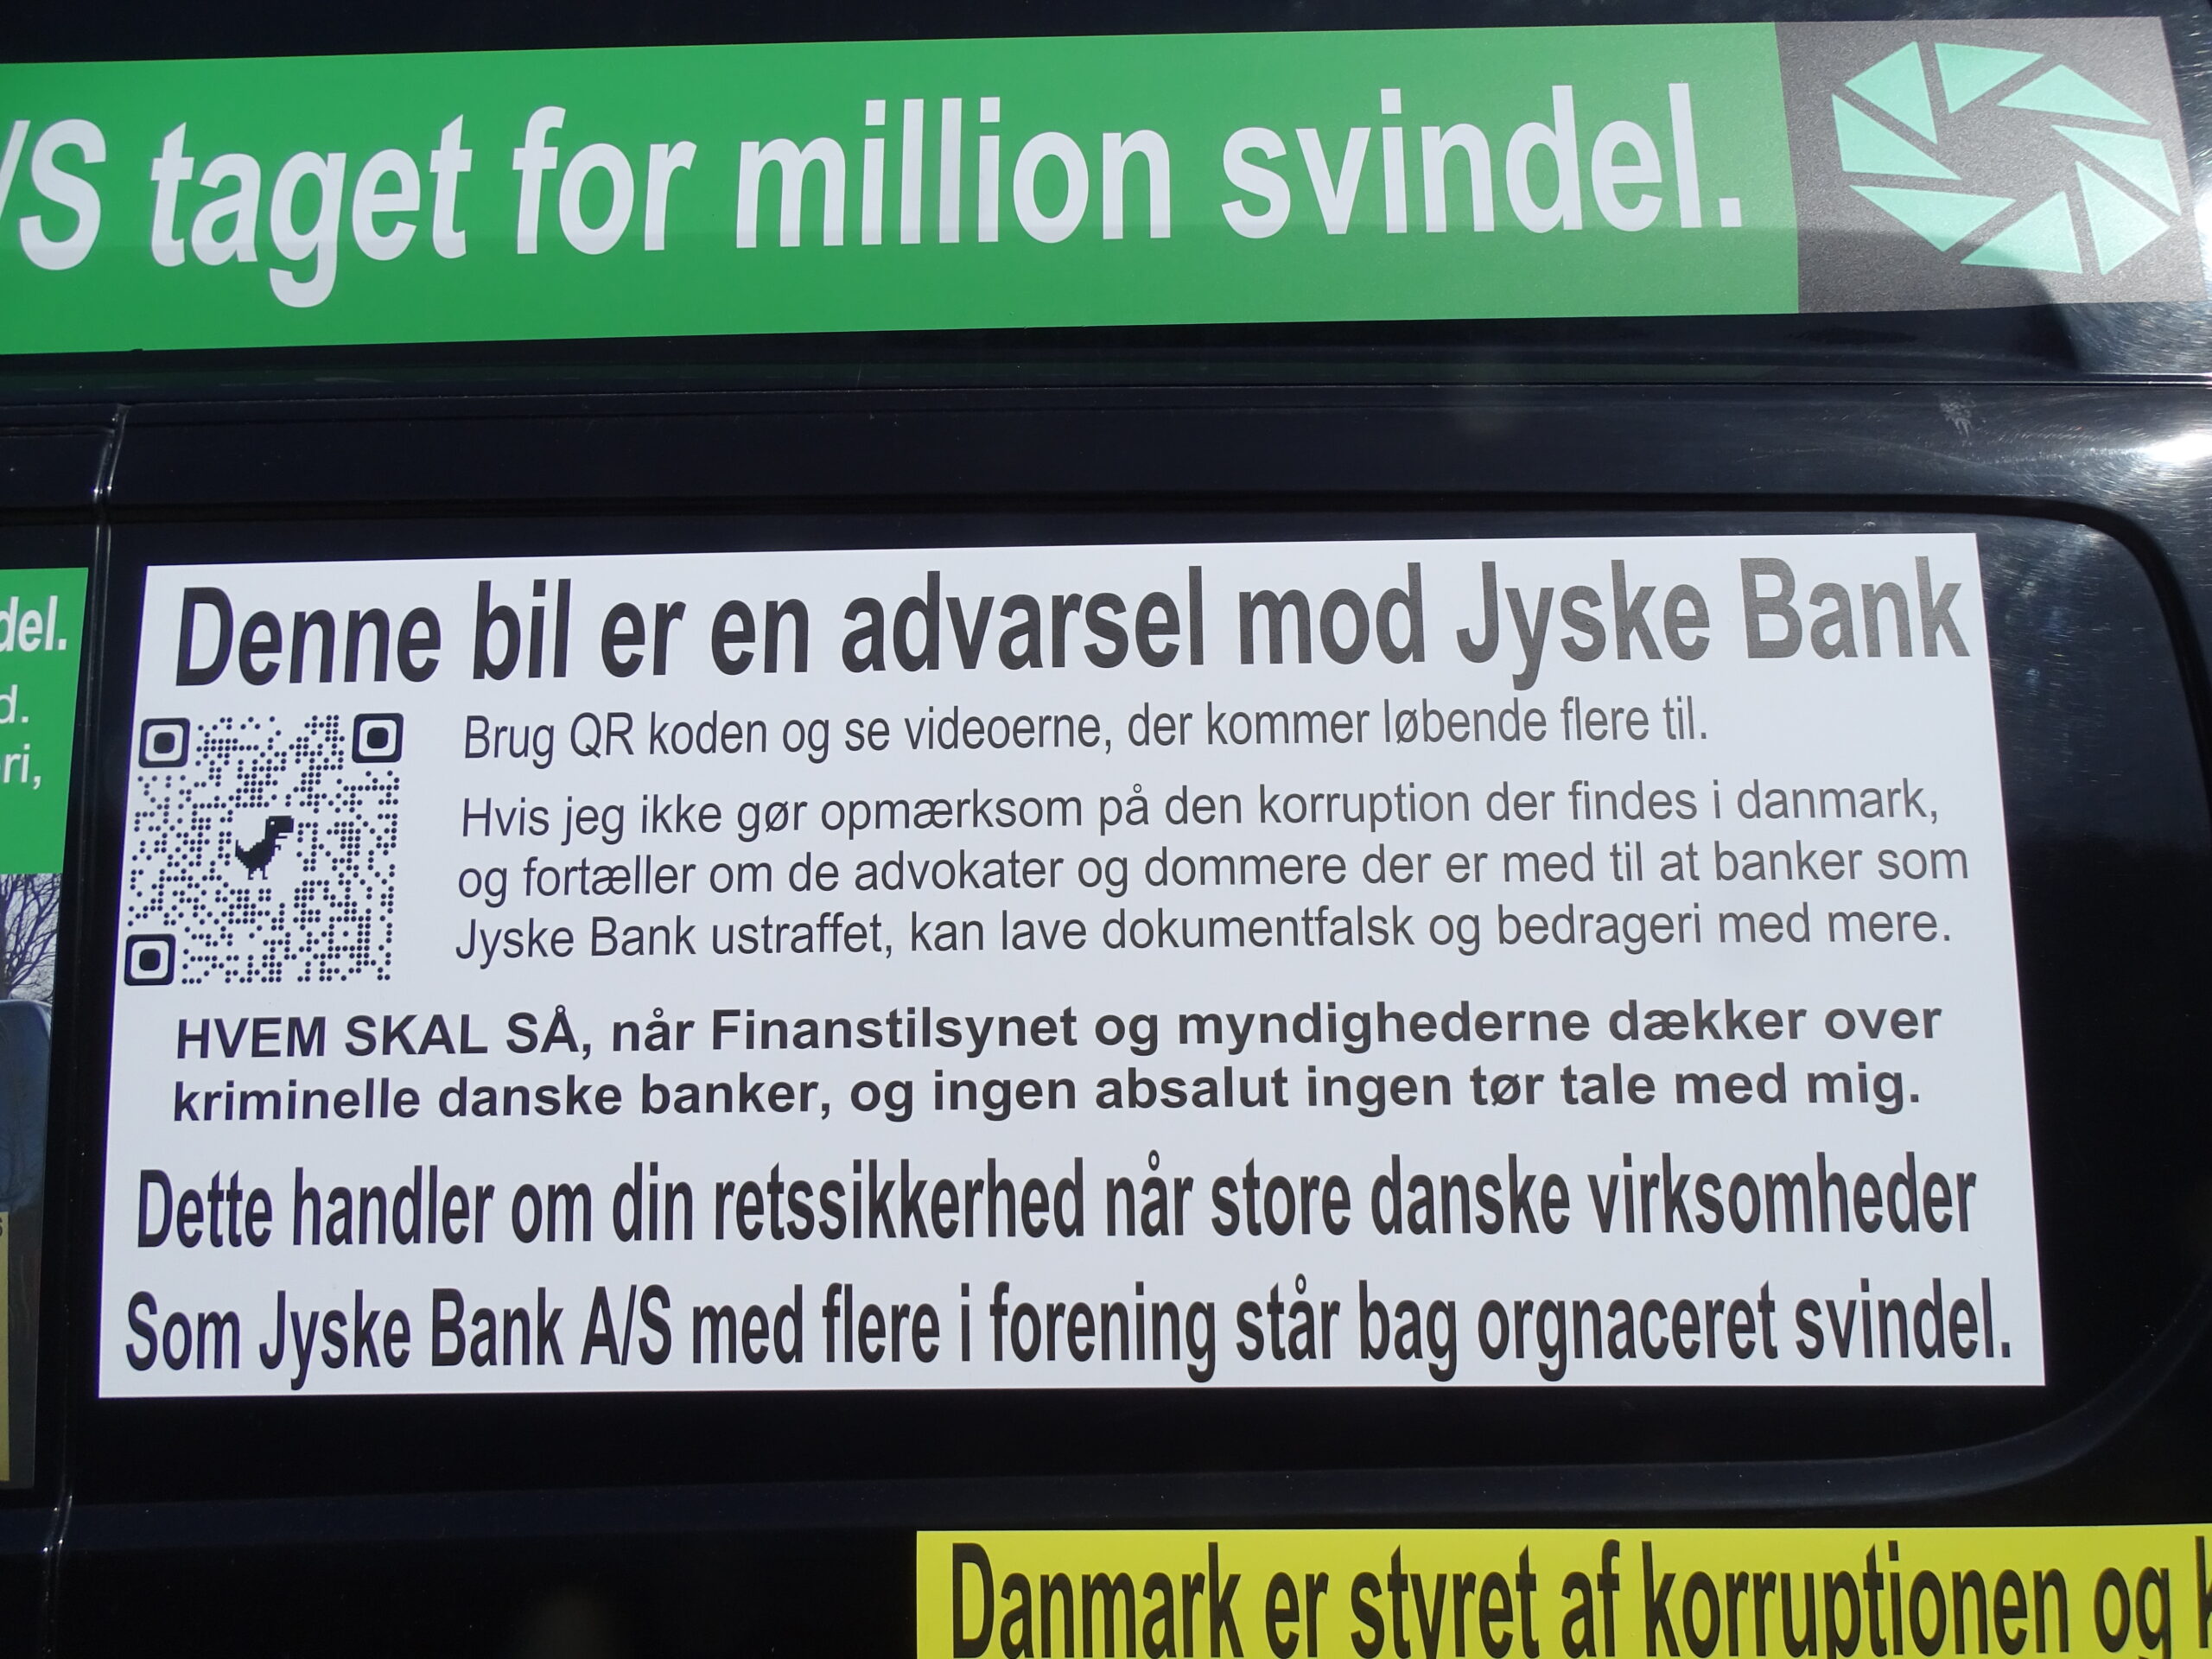 JYSKE BANK A/S HAR LAVET OG ELLER BRUGT. 1. Bedrageri. SVIG 2. Bondefangeri. 3. Dokument falsk. FALSK. 4. Vildledning. 5. Udnyttelse. 6. Lyver for kunde. 7. Vanhjemmel. 8. Bestikkelse / returkommission. Som da Jyske Bank Bestak Lundgrens advokater til at morarbejde den klient, som havde ansat Lundgrens til at fremlægge en sag om svig og falsk mod Jyske Bank A/S 9. Retsmisbrug. 10. Misbrugt adgang til Tinglysningsretten. 11. Fuldmagt misbrug. 12. Ond tro. 13. XXXXXXX. 14. Mandag svig. 15. Lyver overfor Penge Institut ankenævnet. 16. Lyver overfor domstolen. 17. Kan vel skrive MAGT MISBRUG, også. 18. Har taget overpant og sikkerheder for omkring 12 millioner, for en gæld på ca. 3 millioner, hvor der der givet pant i min ejendom på 3 millioner, et pantebrev Jyske Bank A/S iøvrigt ikke vil udlevere uden at stille krav, og det på trods af at jeg ikke skylder Jyske Bank noget som helst. 19. Nægter at udlevere de dokumenter hvori jeg private tidligere har givet Jyske Bank sikkerhed og kaution for selskabet, der har stævnet Jyske Bank for svig. 20. Nægter kunden at tage advokat forbehold, og spærre derfor alle kundens konti, for ikke at påføre et advokat forbehold, på de 2 salgsfuldmagter Jyske Bank ved Birgit Buch Thuesen tvang Carsten Storbjerg til at underskrive. Hvis Jyske Bank A/S ved deres mange medhjælpere og bagmænd, intet af ovenstående har lavet, så skal Jyske Bank og deres medvirkende advokater samt CEO Anders Christian Dam da bare komme til mig, og i må da gerne beskylde mig for injurier og bagvaskelse af Jyske Bank A/S. Jeg har fremlagt beviser for mine påstande. Og anklager stadig Jyske Bank for at stå bag omfattende kriminalitet mod min virksomhed. Hvis det ikke er sandt så anmeld mig da til politiet. I min mail 7 maj. til Jyske Bank A/S oplysninger jeg da også, at min opfordring og mail er delt med politiet. Hvis Jyske Bank og Lund Elmer Sandager advokater ikke mener jeg har bevis for at Nicolai Hansen og Jeanett Kofoed Hansen, med Lars Aaqvist efterfulgt af hjælp fra mindst Anette Kirkeby, Casper Dam Olsen og advokat Morten Ulrik Gade med Lund Elmer Sandager advokater og deres partner Philip Baruch, samme i forening står bag Jyske Banks omfattende og organiseret kriminalitet mod min virksomhed, så ring til politiet, og bed dem om at efterforske mine anklager mod Jyske Bank. Kære Anders Dam, skal jeg komme over og tage dig i hånden og følge med op til politistationen, så kan du politi anmelde mig for injurier og bagvaskelse af Jyske bank hvis du og dine advokater ellers tør. Men hvis du Anders Dam er bange for at Jyske Bank mister retten til at drive bank vi Danmark, hvis politiet efterforsker kundens beviser for Jyske banks brug af kriminel virksomhed, så skal du Anders Dam ikke sige noget. Læs mere på BANKNYT om den kriminelle Jyske Bank. https://www.google.com/search?q=banknyt.dk+Nicolai+Hansen,+Casper+Dam+Olsen,+Anette+Kirkeby&source=lmns&bih=714&biw=1536&hl=da&sa=X&ved=2ahUKEwicpPKjq-33AhUBgosKHf4IDvoQ_AUoAHoECAEQAA @DamAnders @AndersDam #JyskeBank #Bank #politi #Lundgrens #DanTerkildsen #LES #LundElmerSandager #PhilipBaruch